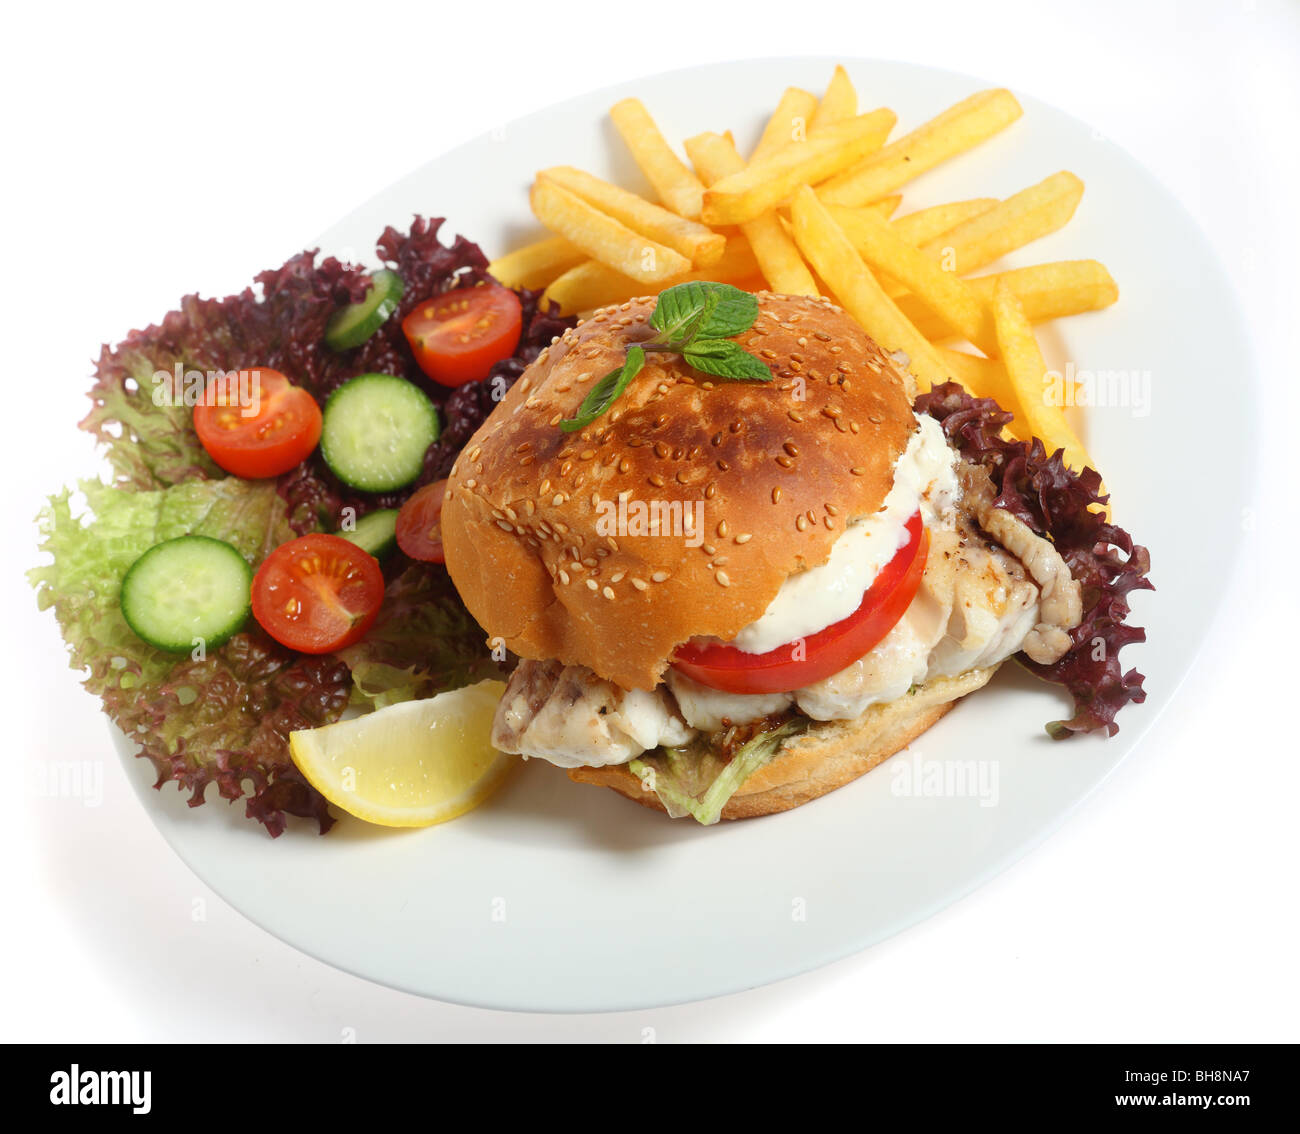 Un hamburger bun rempli d'un filet de poisson frit hamour, avec salade et frites (ou frites) Banque D'Images